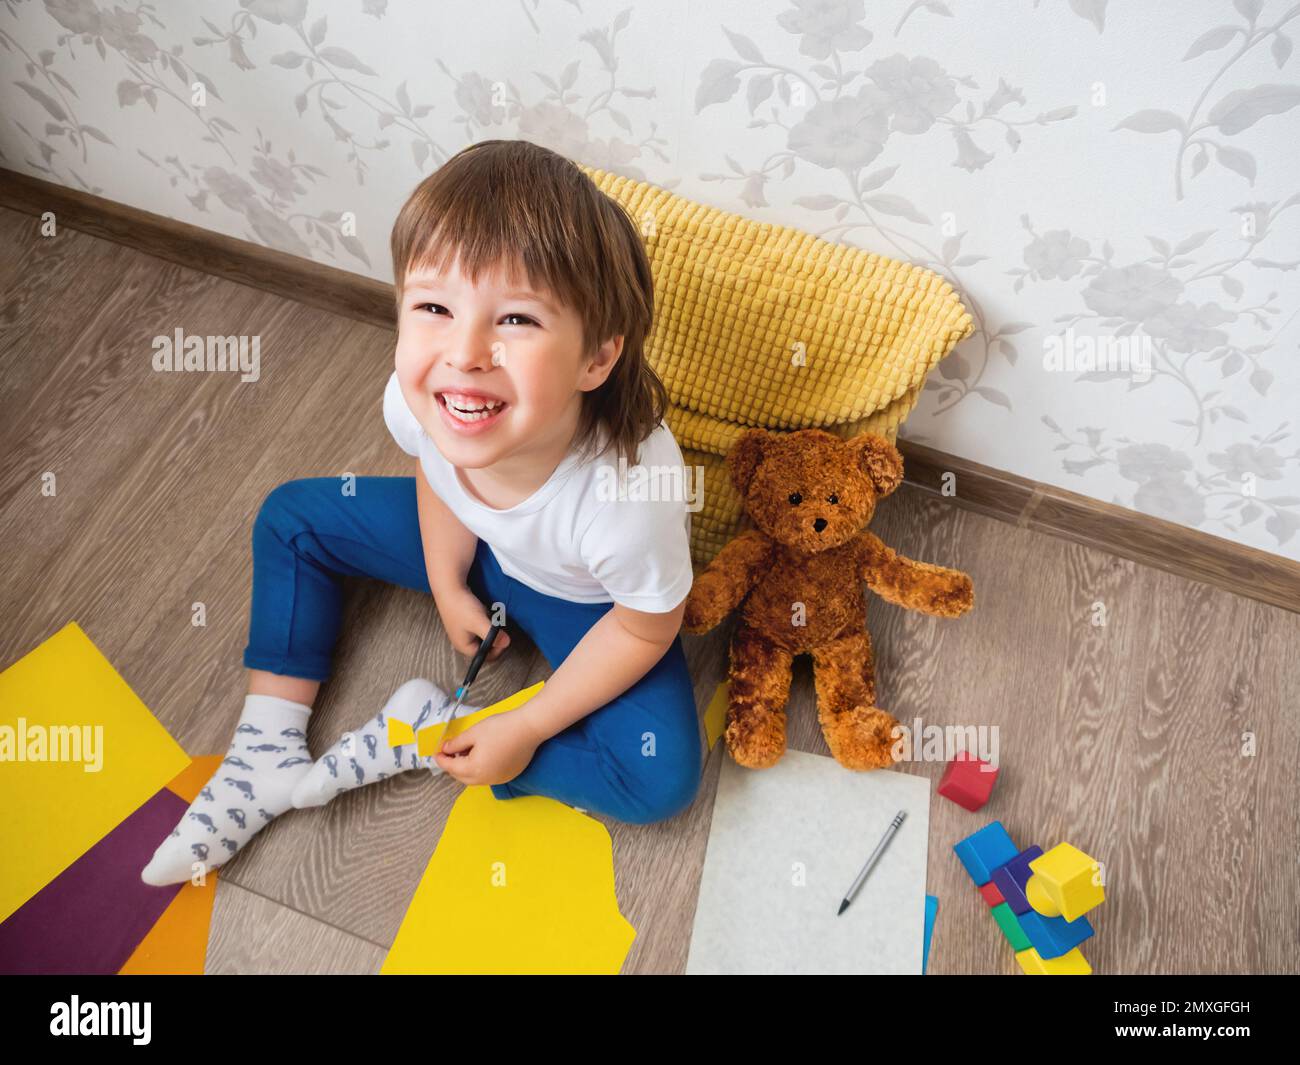 Il bambino impara a tagliare carta colorata con le forbici. Il bambino si siede sul pavimento nella stanza dei bambini con i blocchi del giocattolo e l'orso del teddy. Corsi educativi per bambini Foto Stock